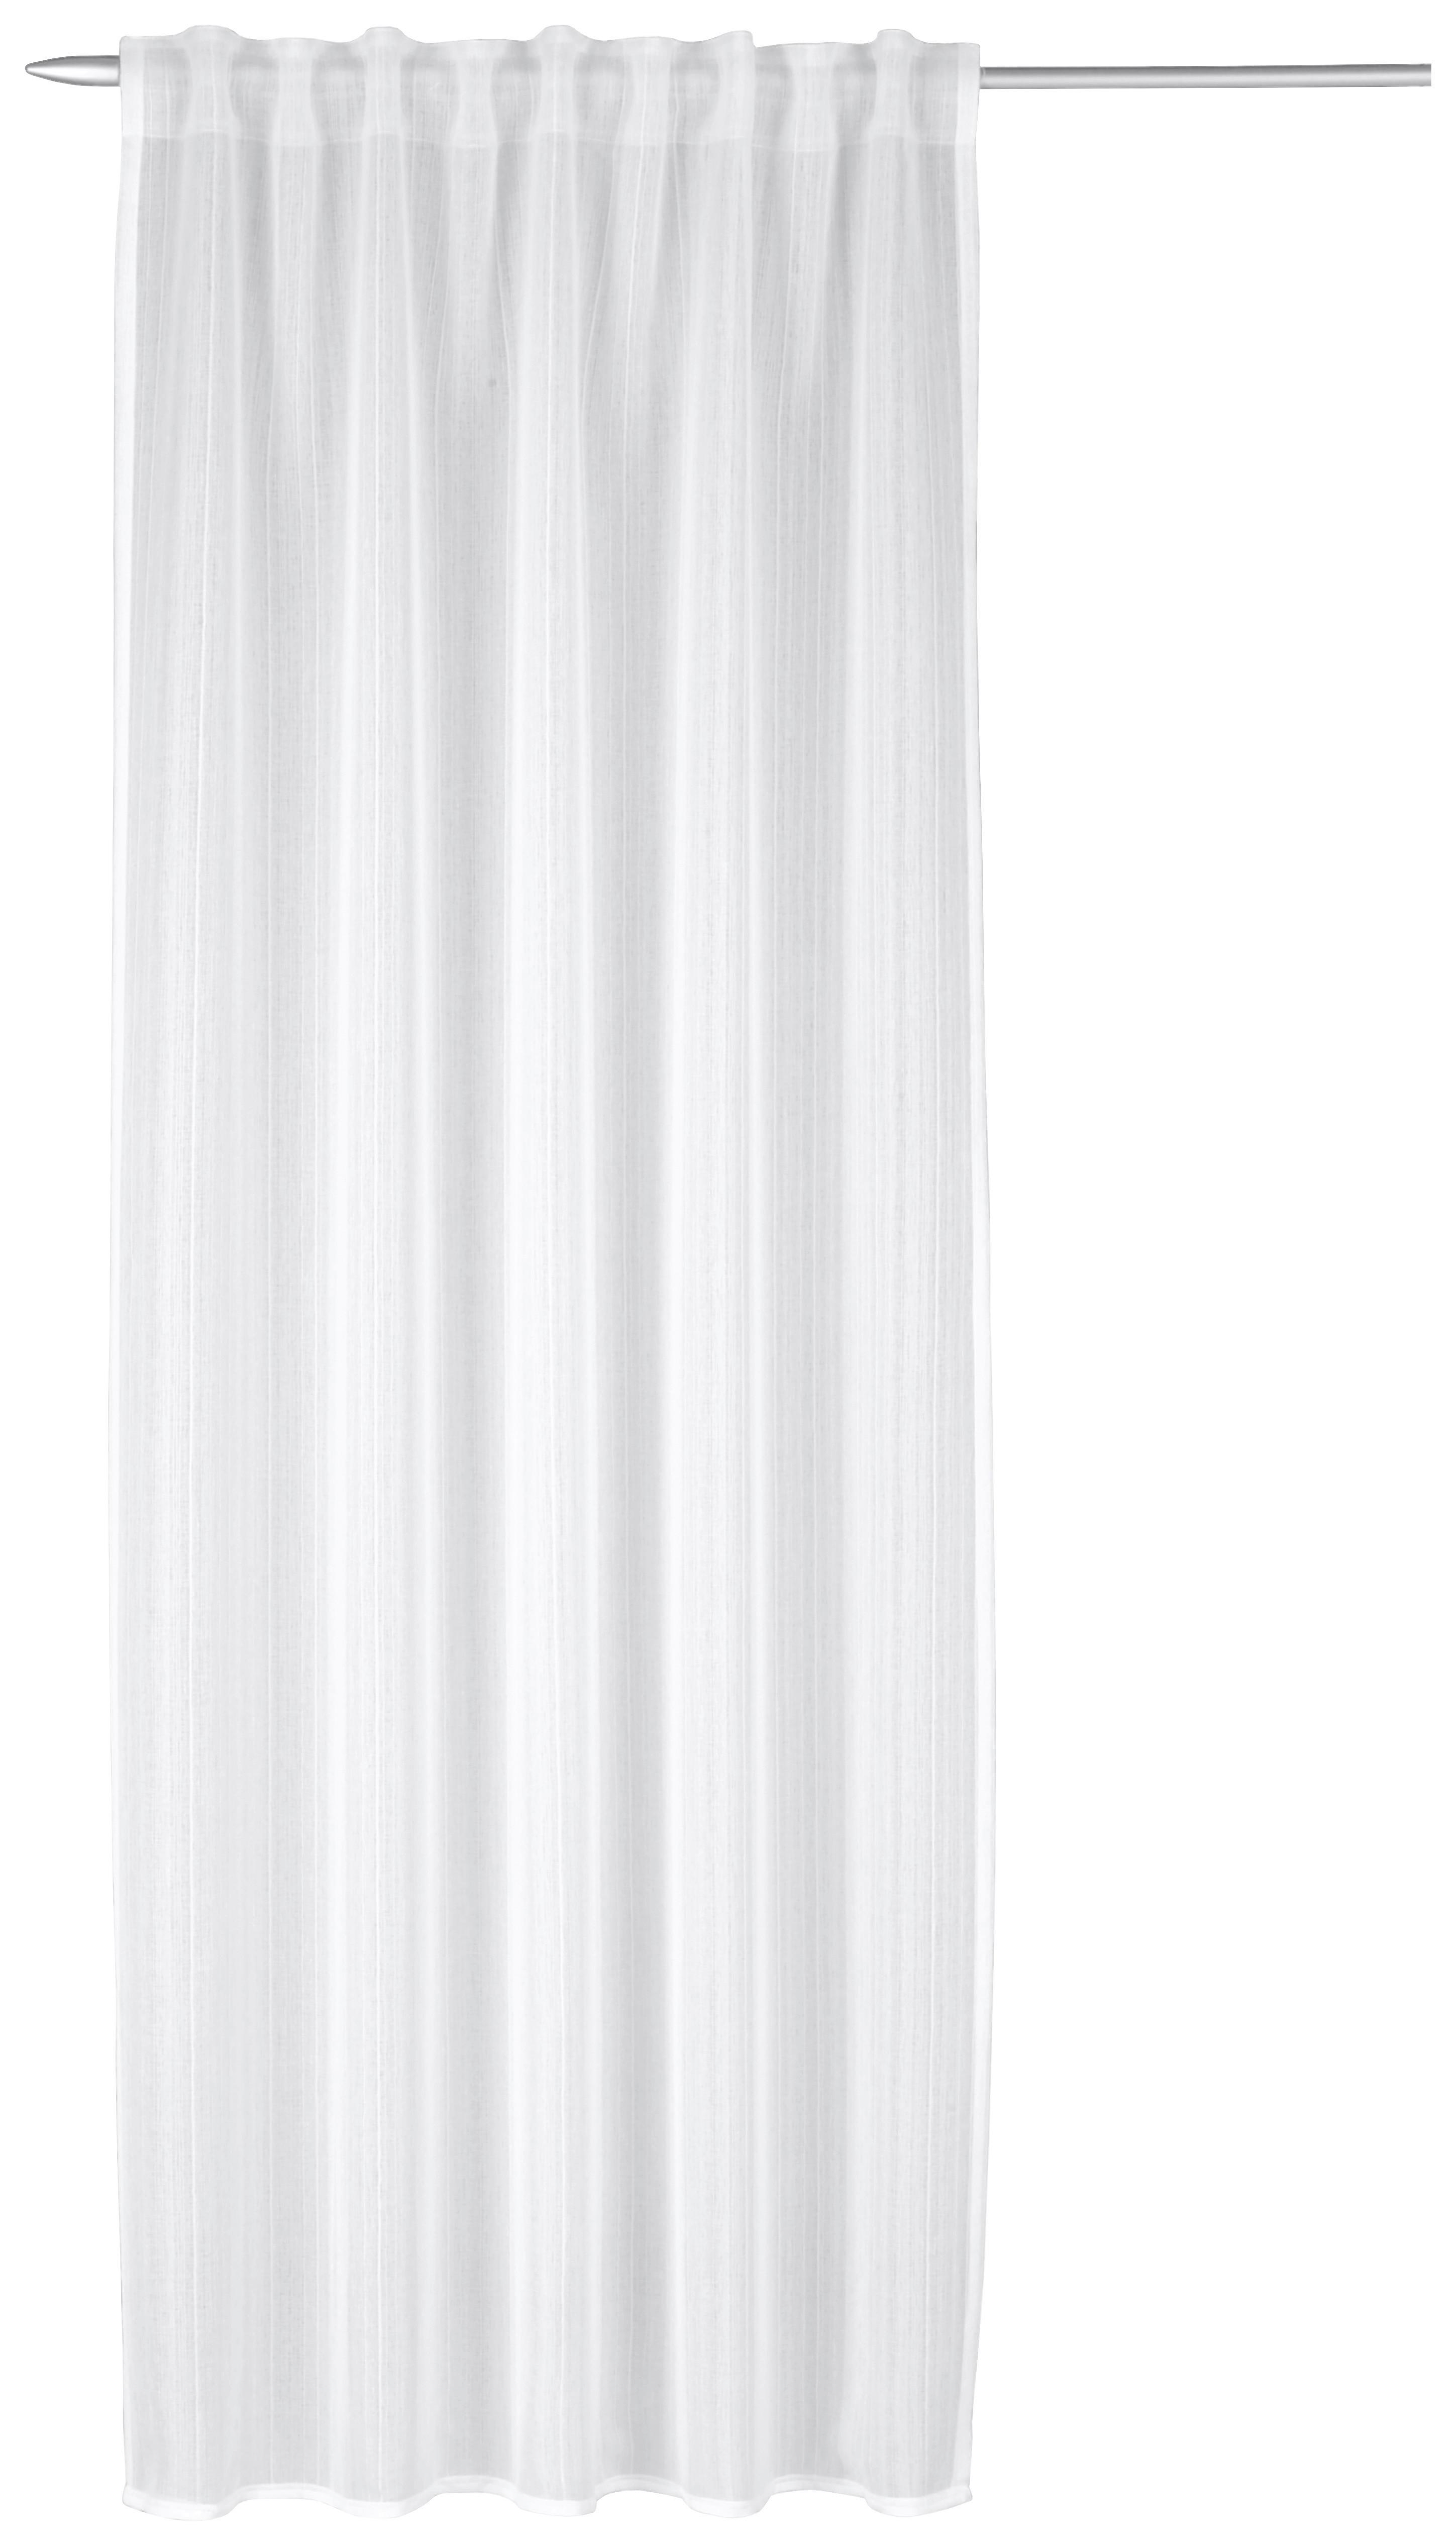 Készfüggöny Kiara - Fehér, modern, Textil (135/245cm) - Luca Bessoni